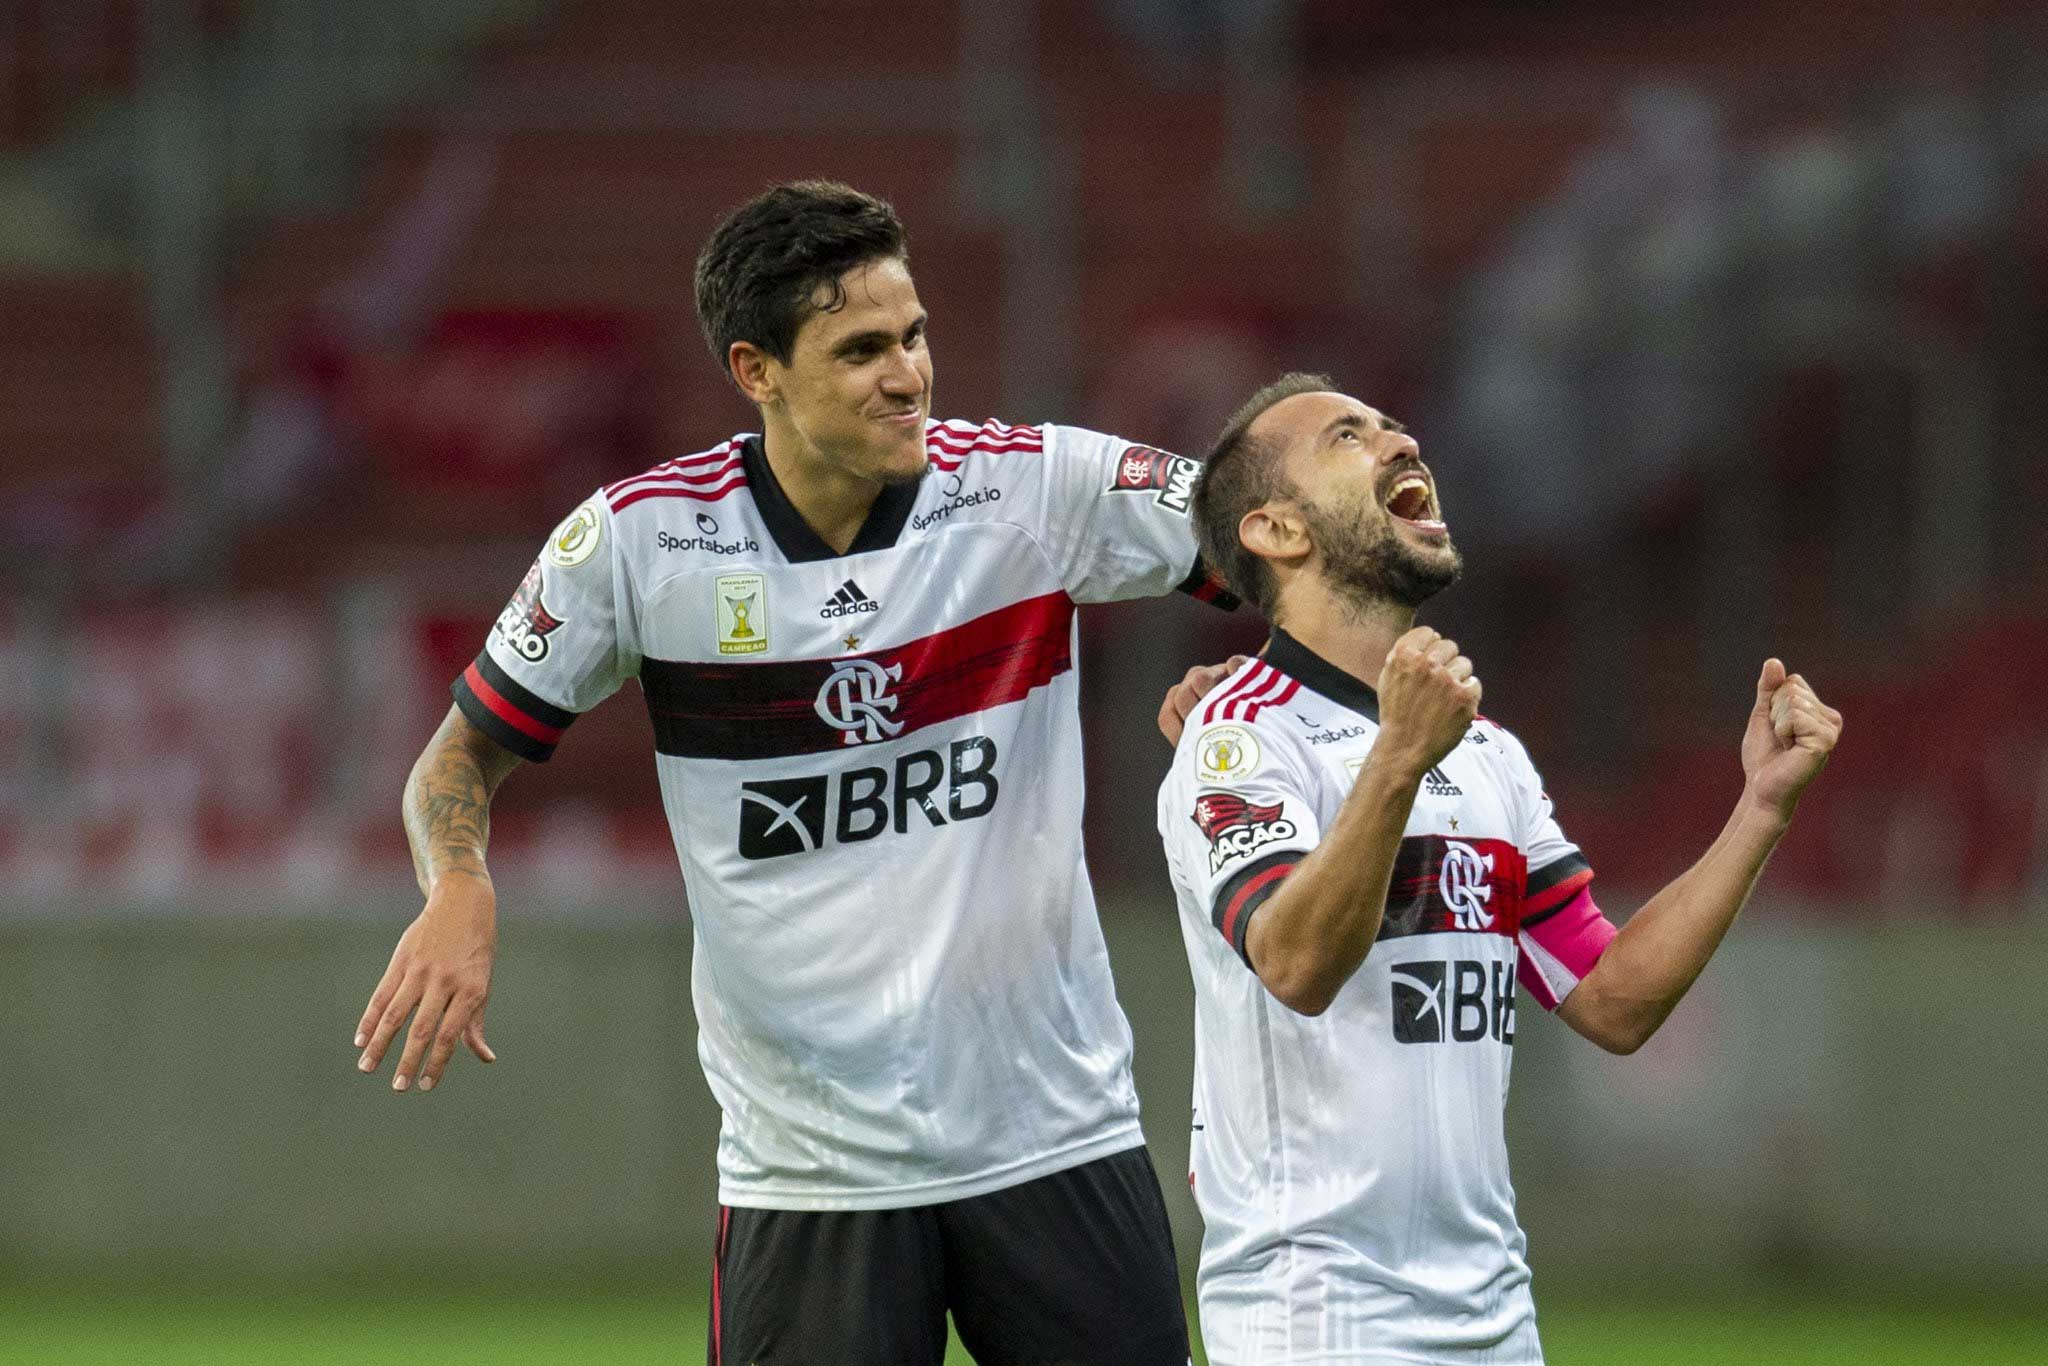 Nos acréscimos, Flamengo empata com Internacional no Beira-Rio. Foto: reprodução twitter